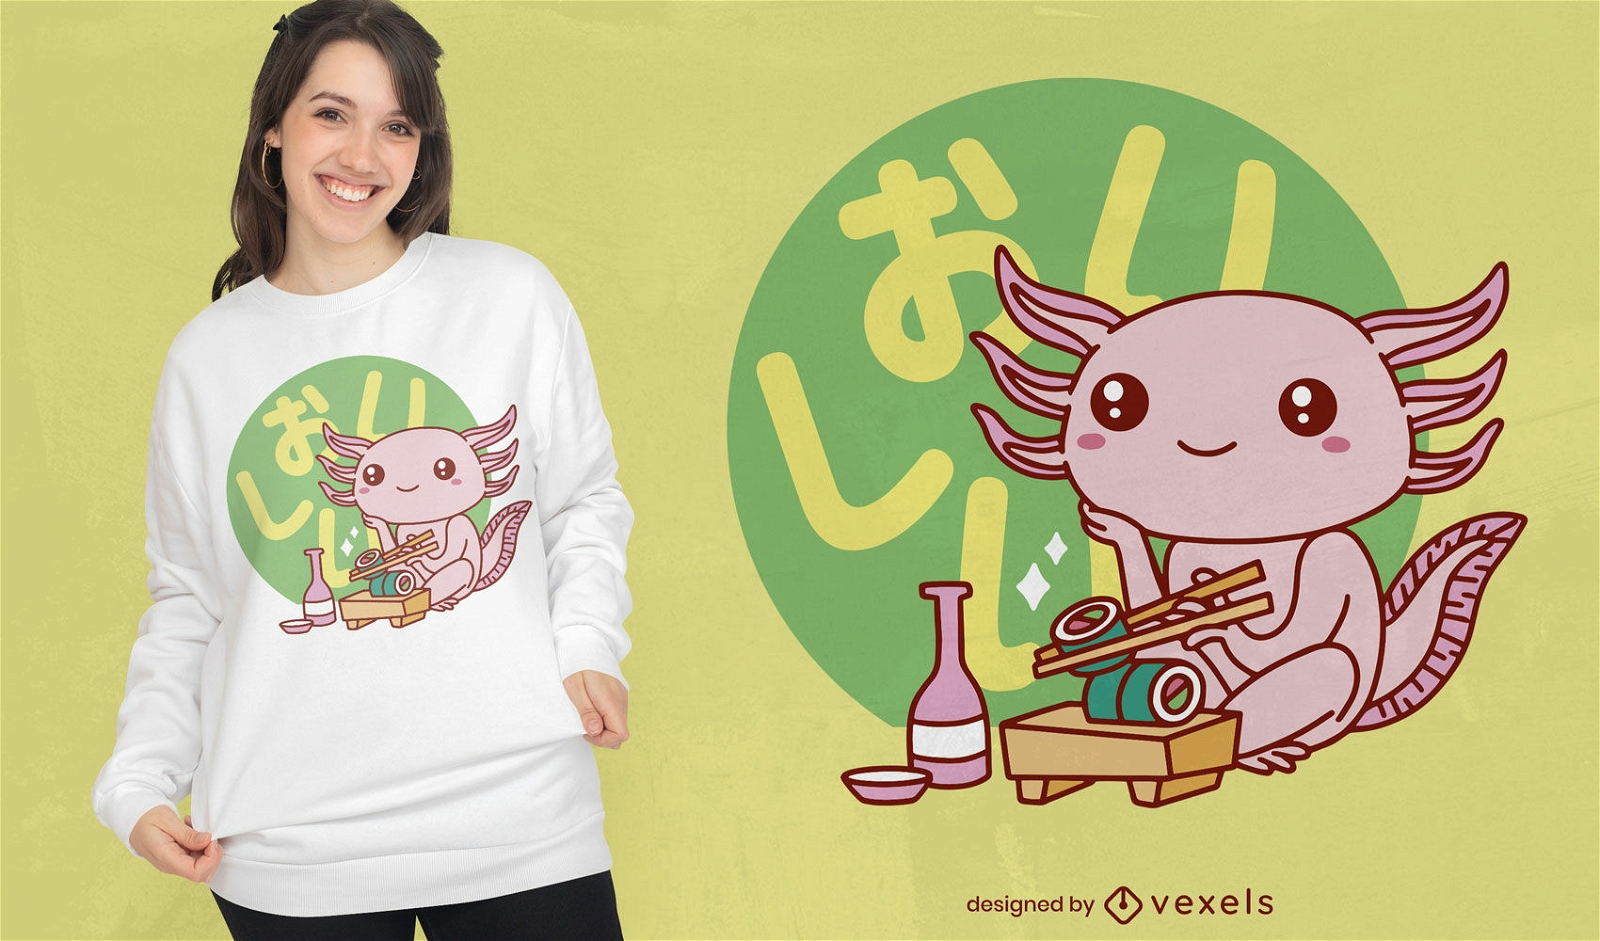 S??er Axolotl, der Sushi-T-Shirt-Design isst